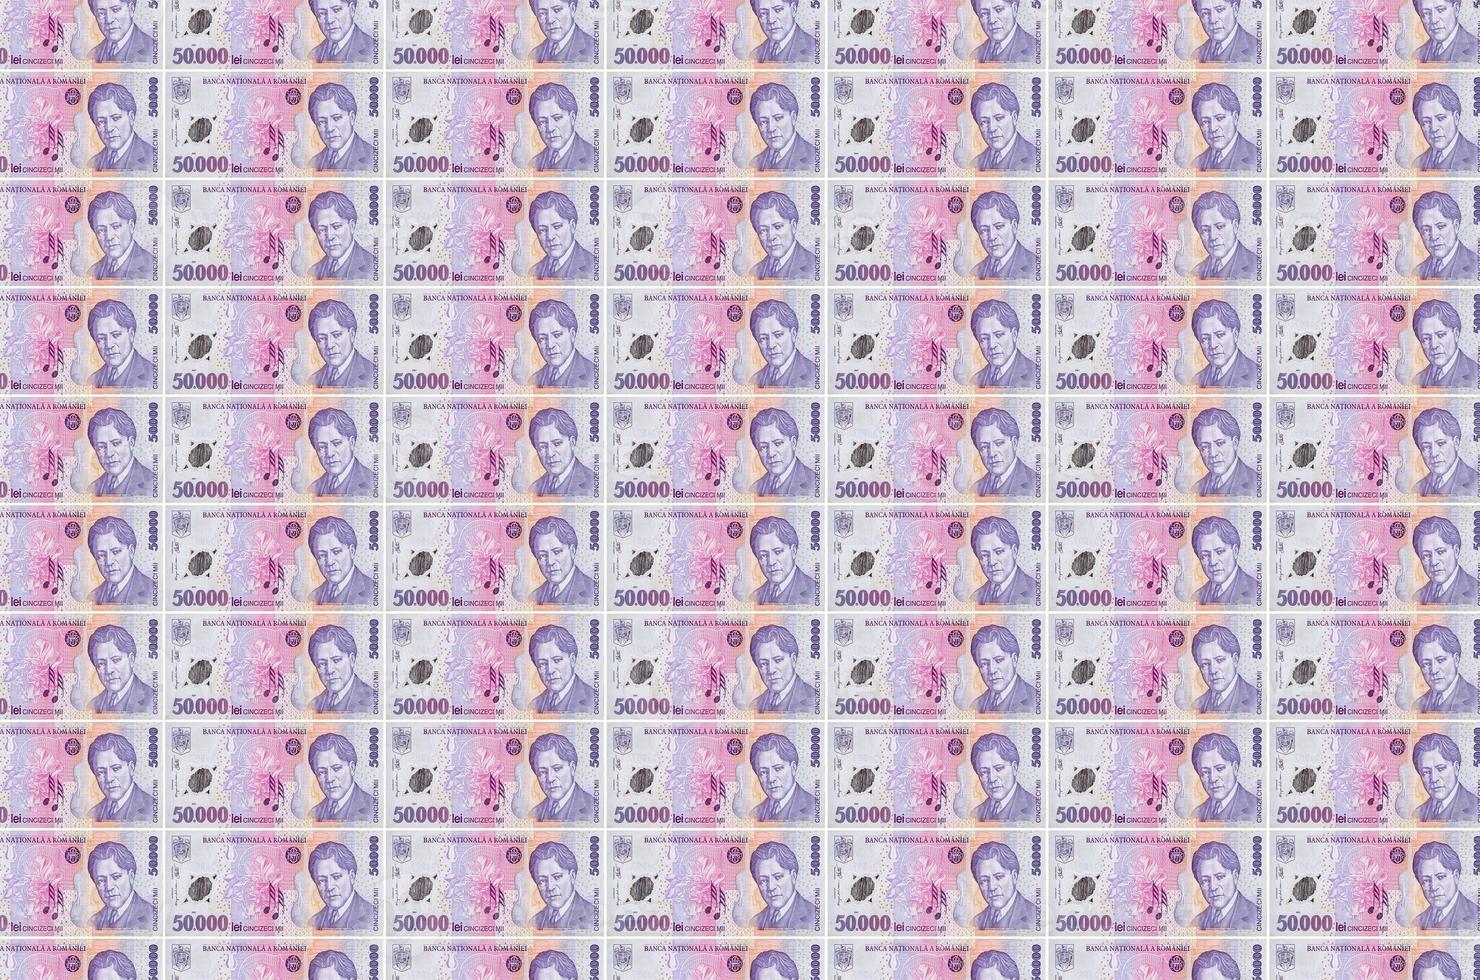 50000 notas de leu romeno impressas no transportador de produção de dinheiro. colagem de muitas contas. conceito de desvalorização da moeda foto